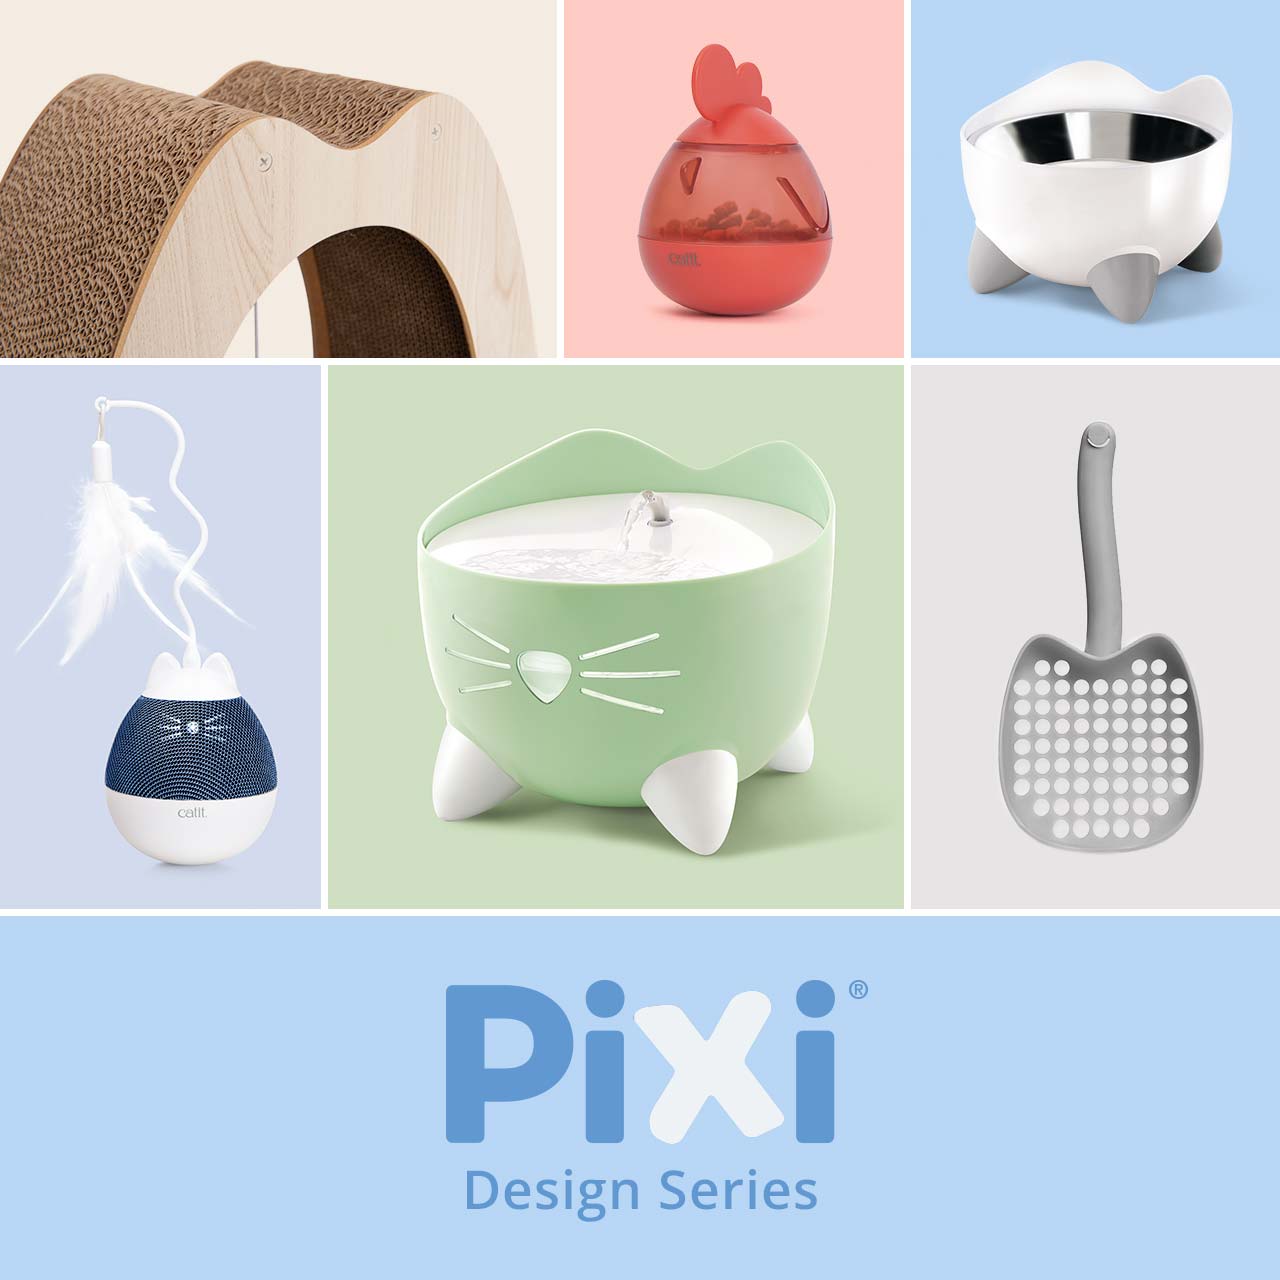 Serie de Diseño Catit PIXI